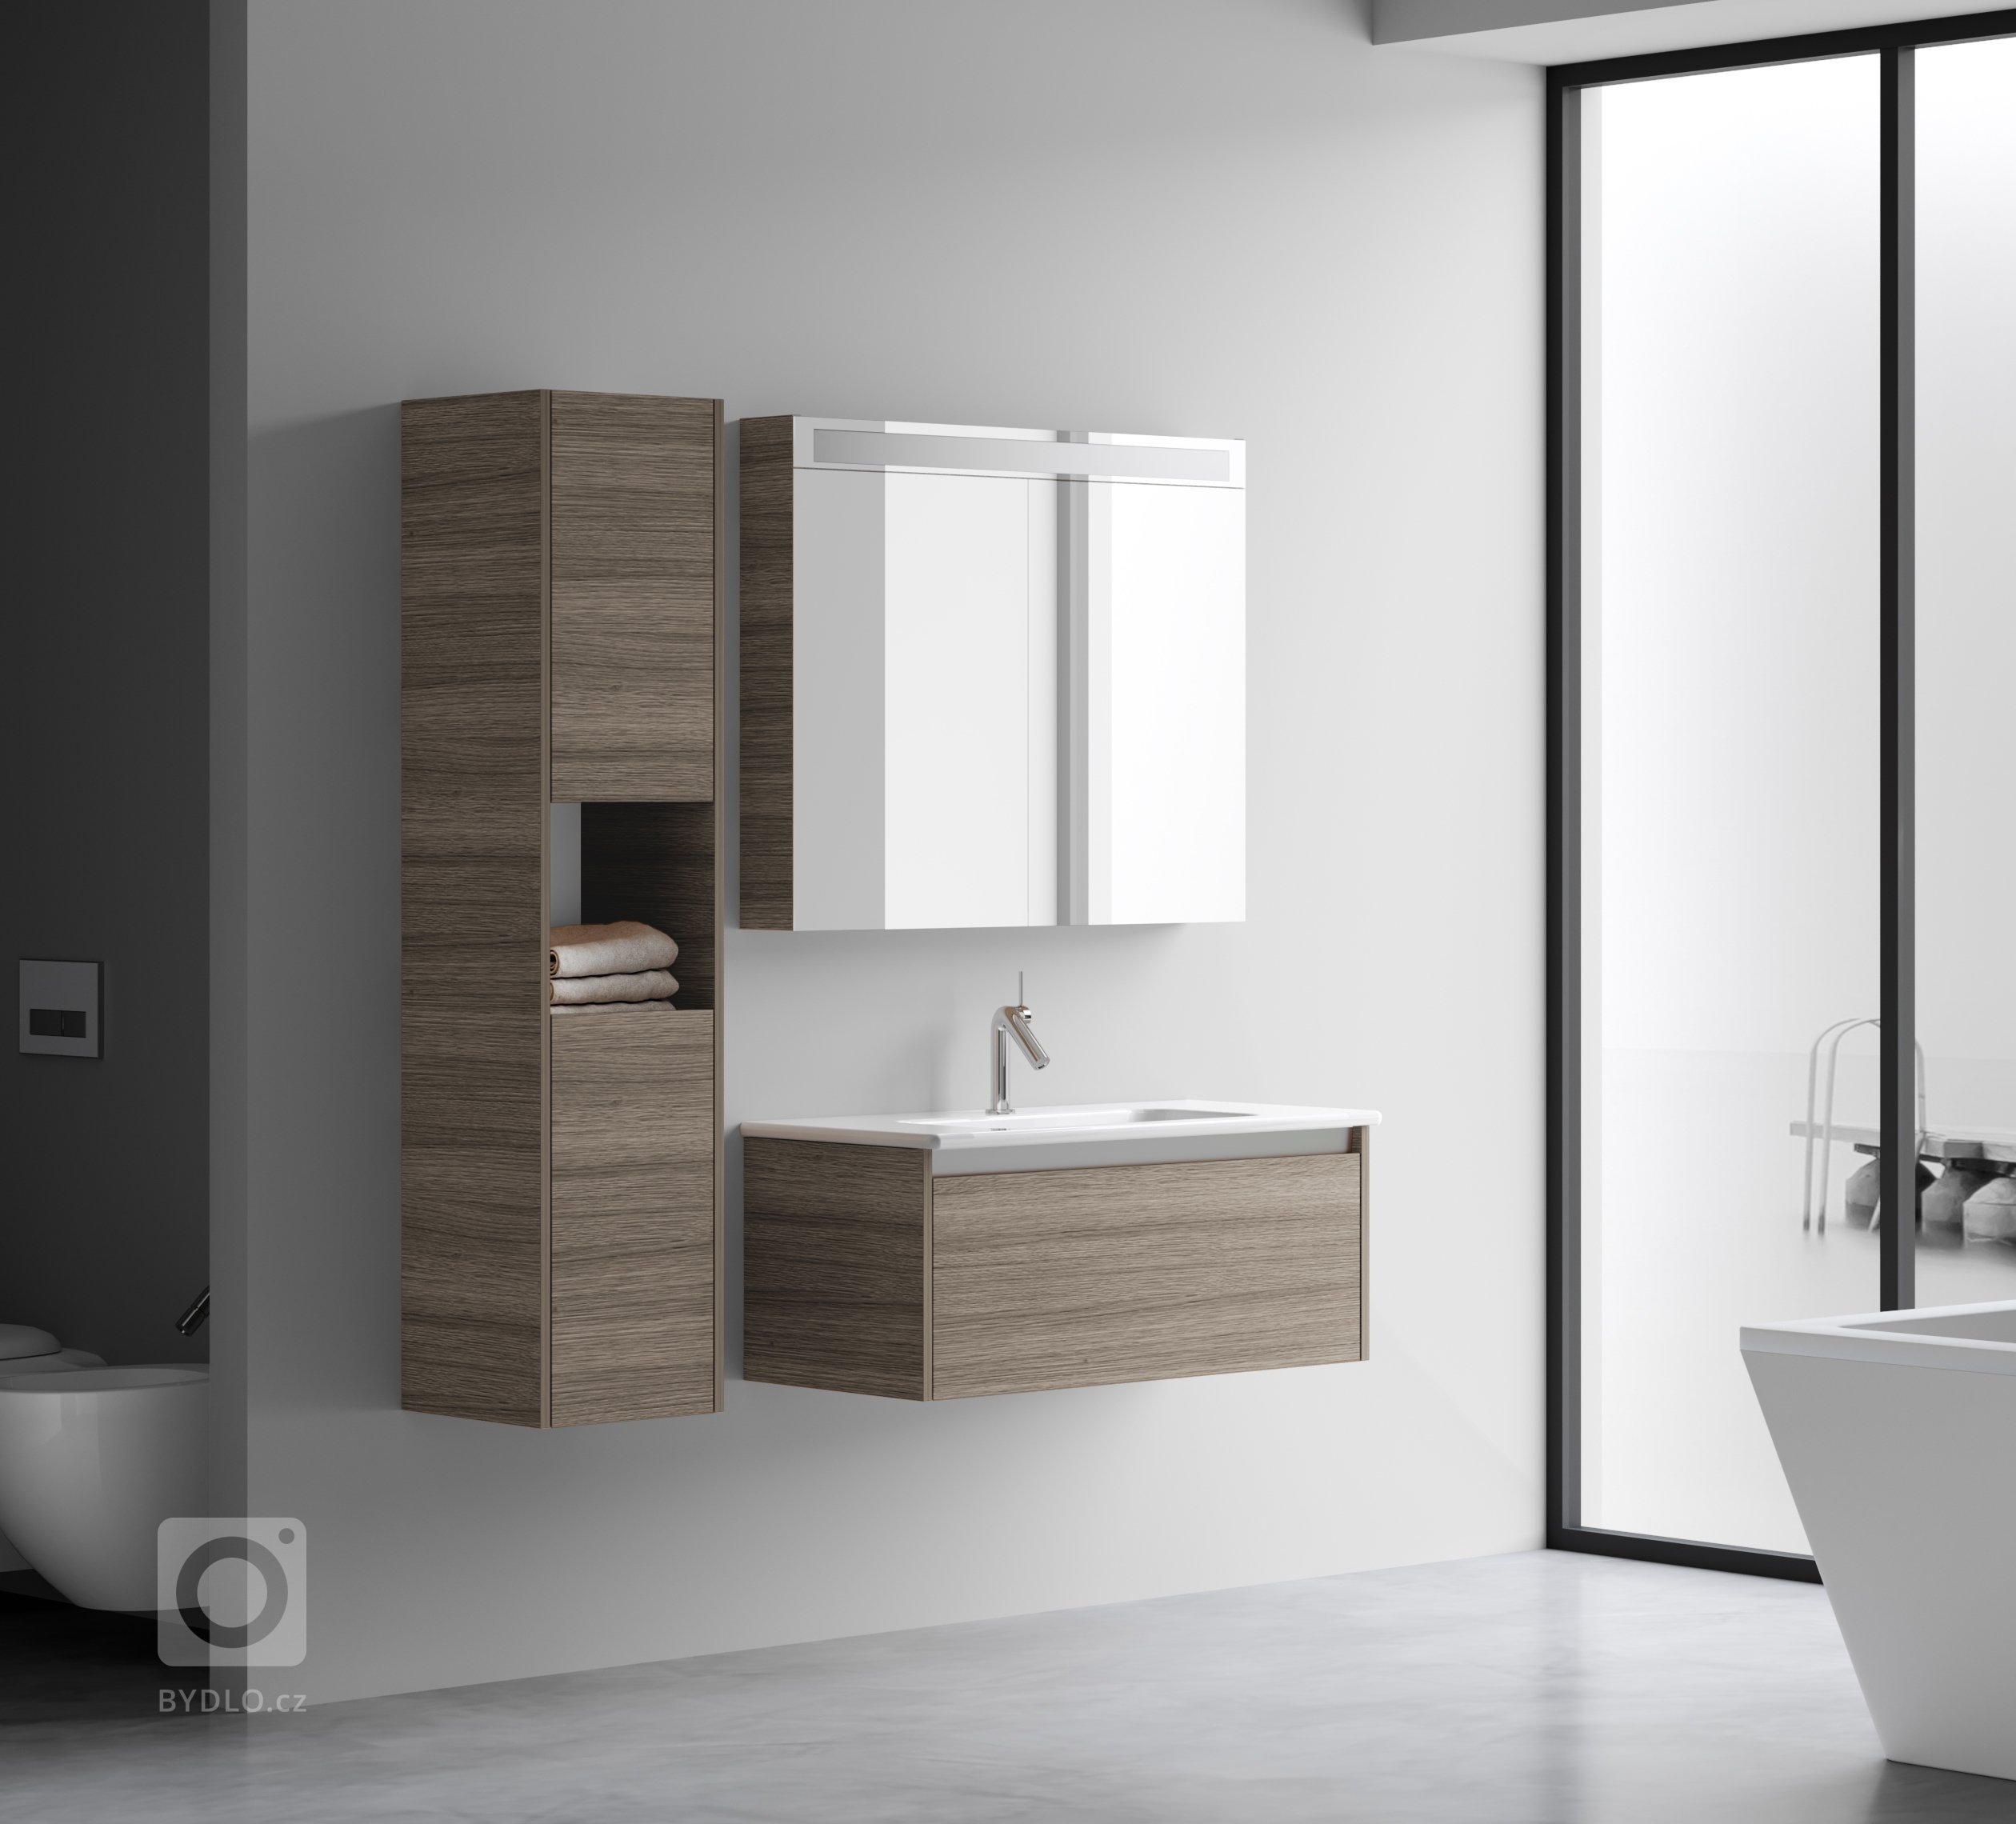 Představujeme vám koupelnový nábytek řady Bono od společností Dřevojas.
